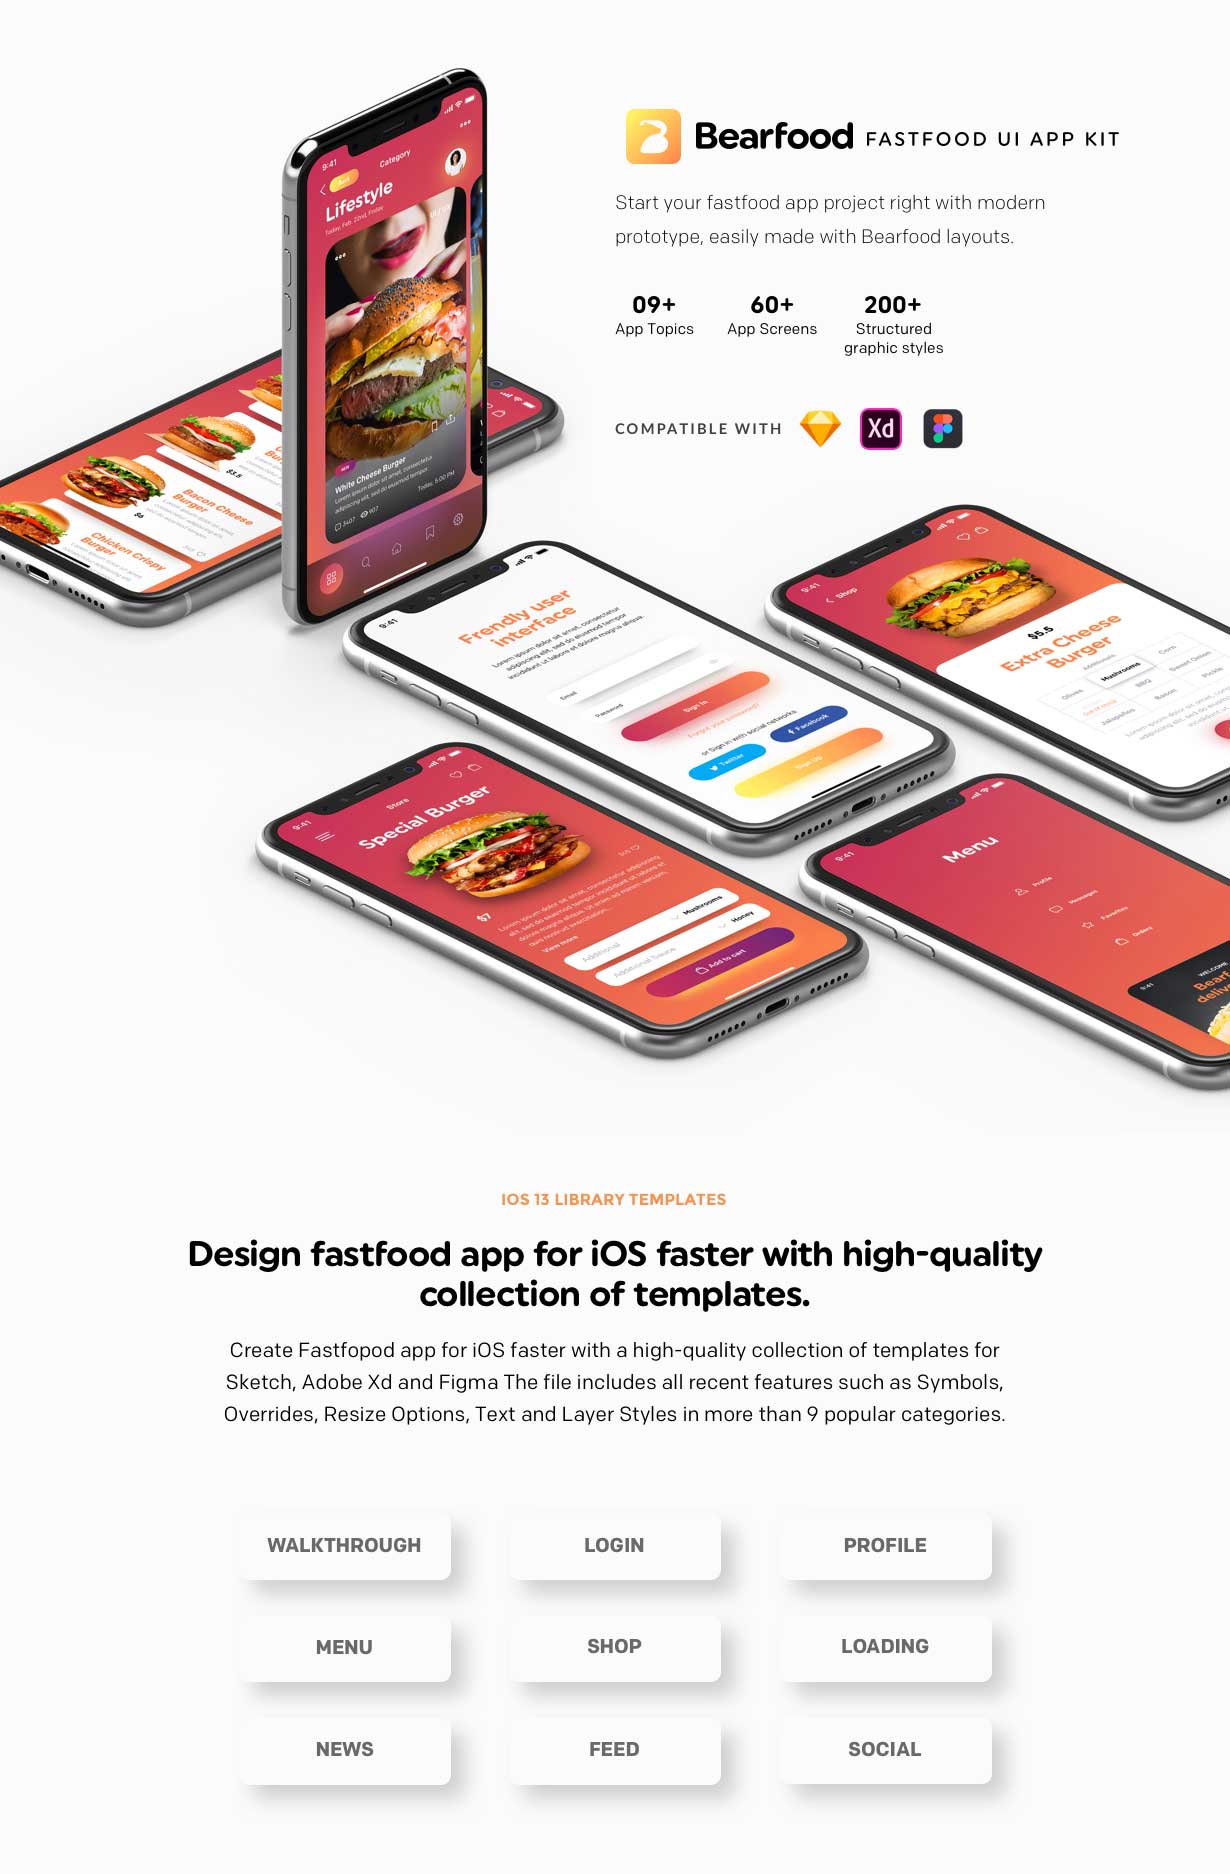 Bearfood - Fast-food app kit - 1